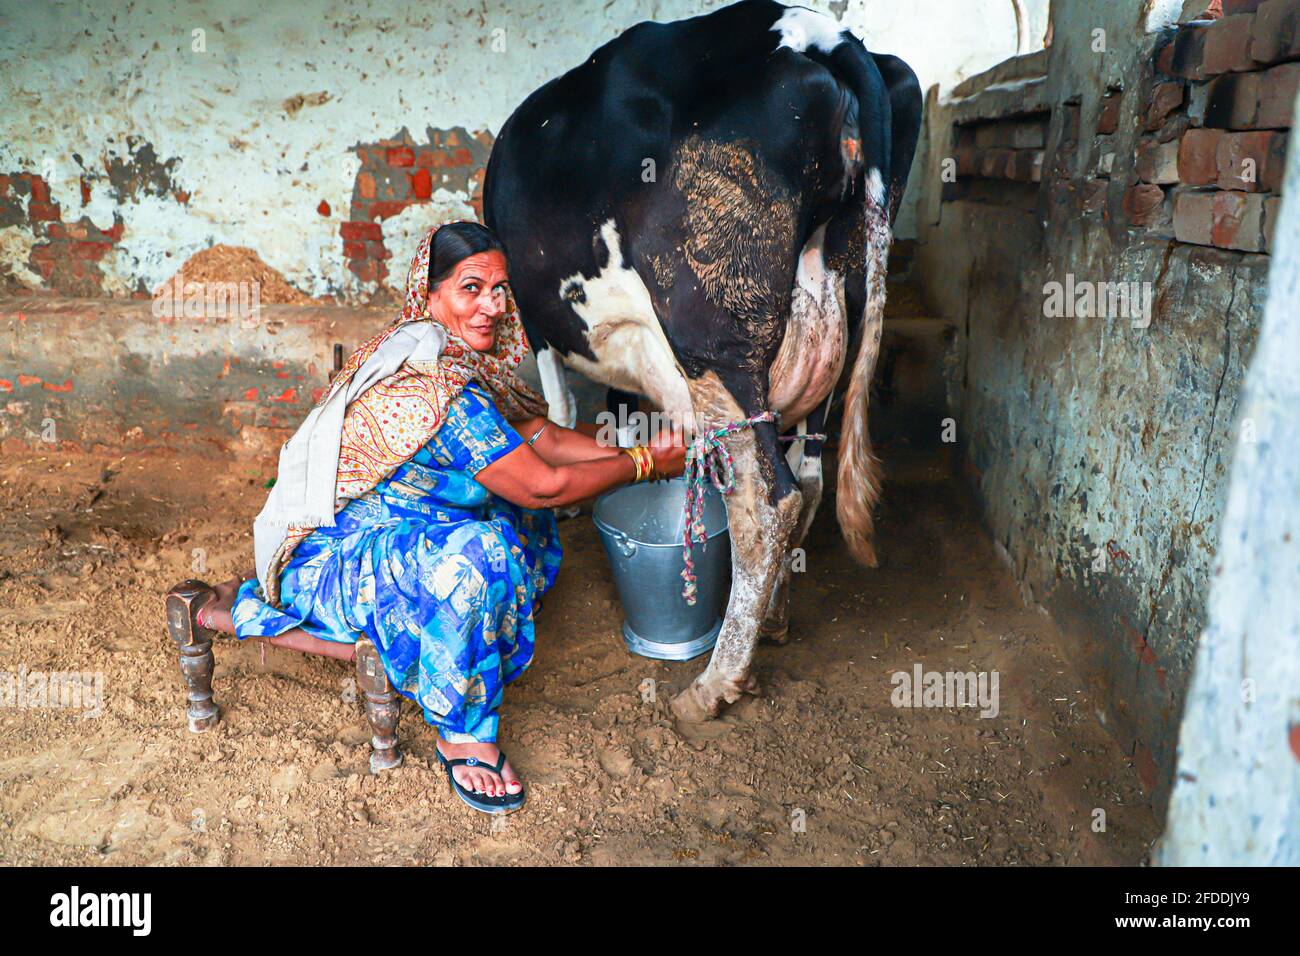 Women Milked Like Cow